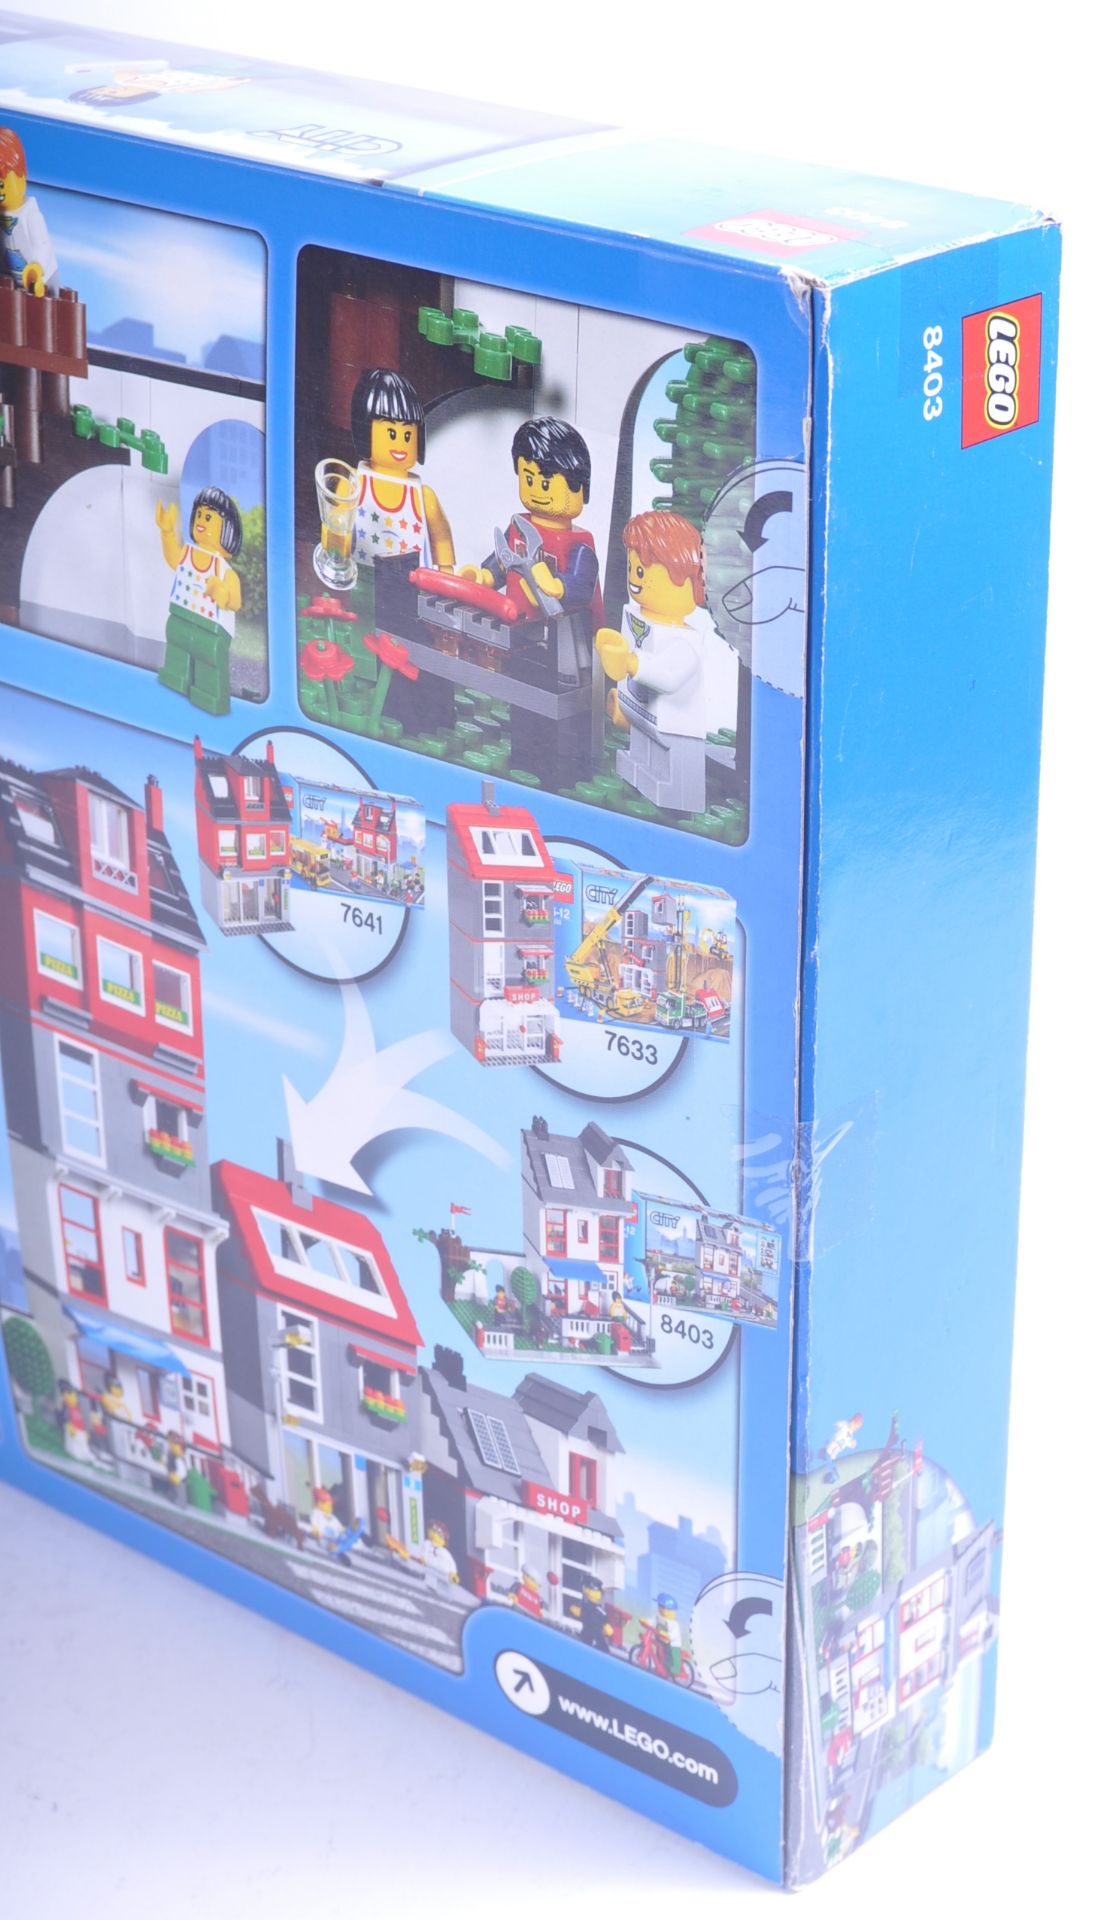 LEGO SET - LEGO CITY - 8403 - CITY HOUSE - Image 3 of 4